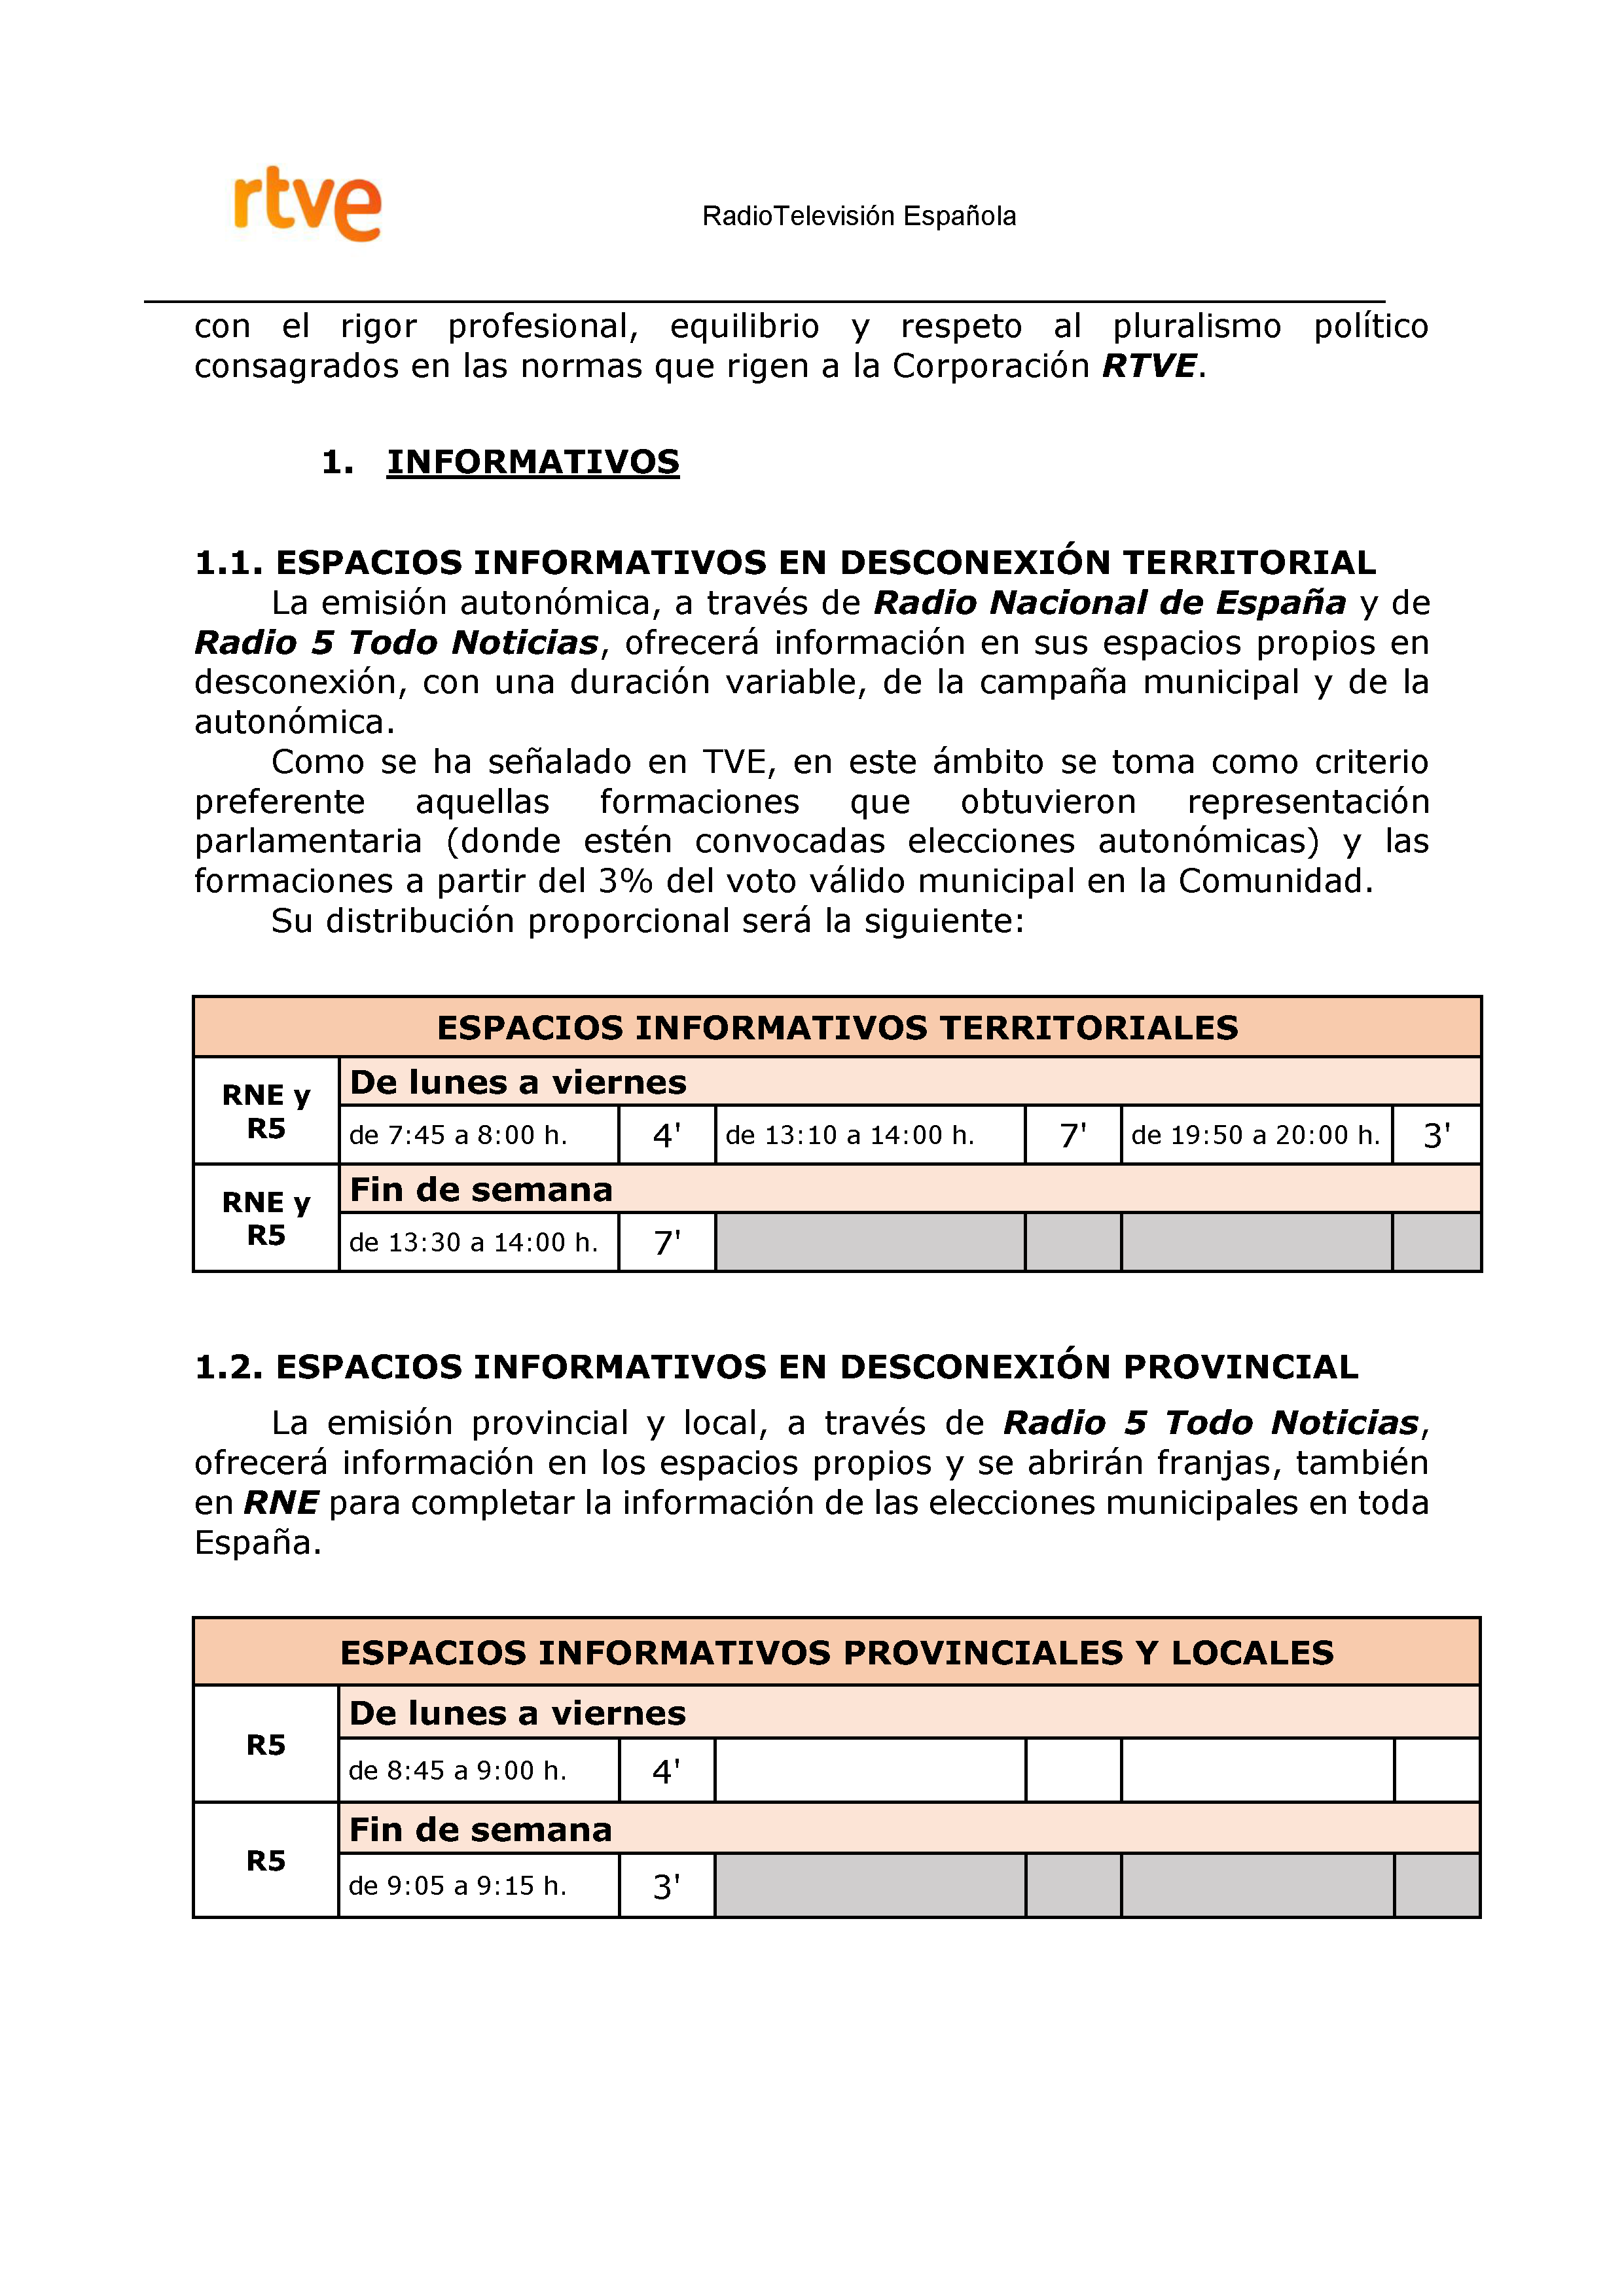 PLAN DE COBERTURA INFORMATIVA RTVE en Extremadura ELECCIONES MUNICIPALES Y AUTONÓMICAS Pag 10